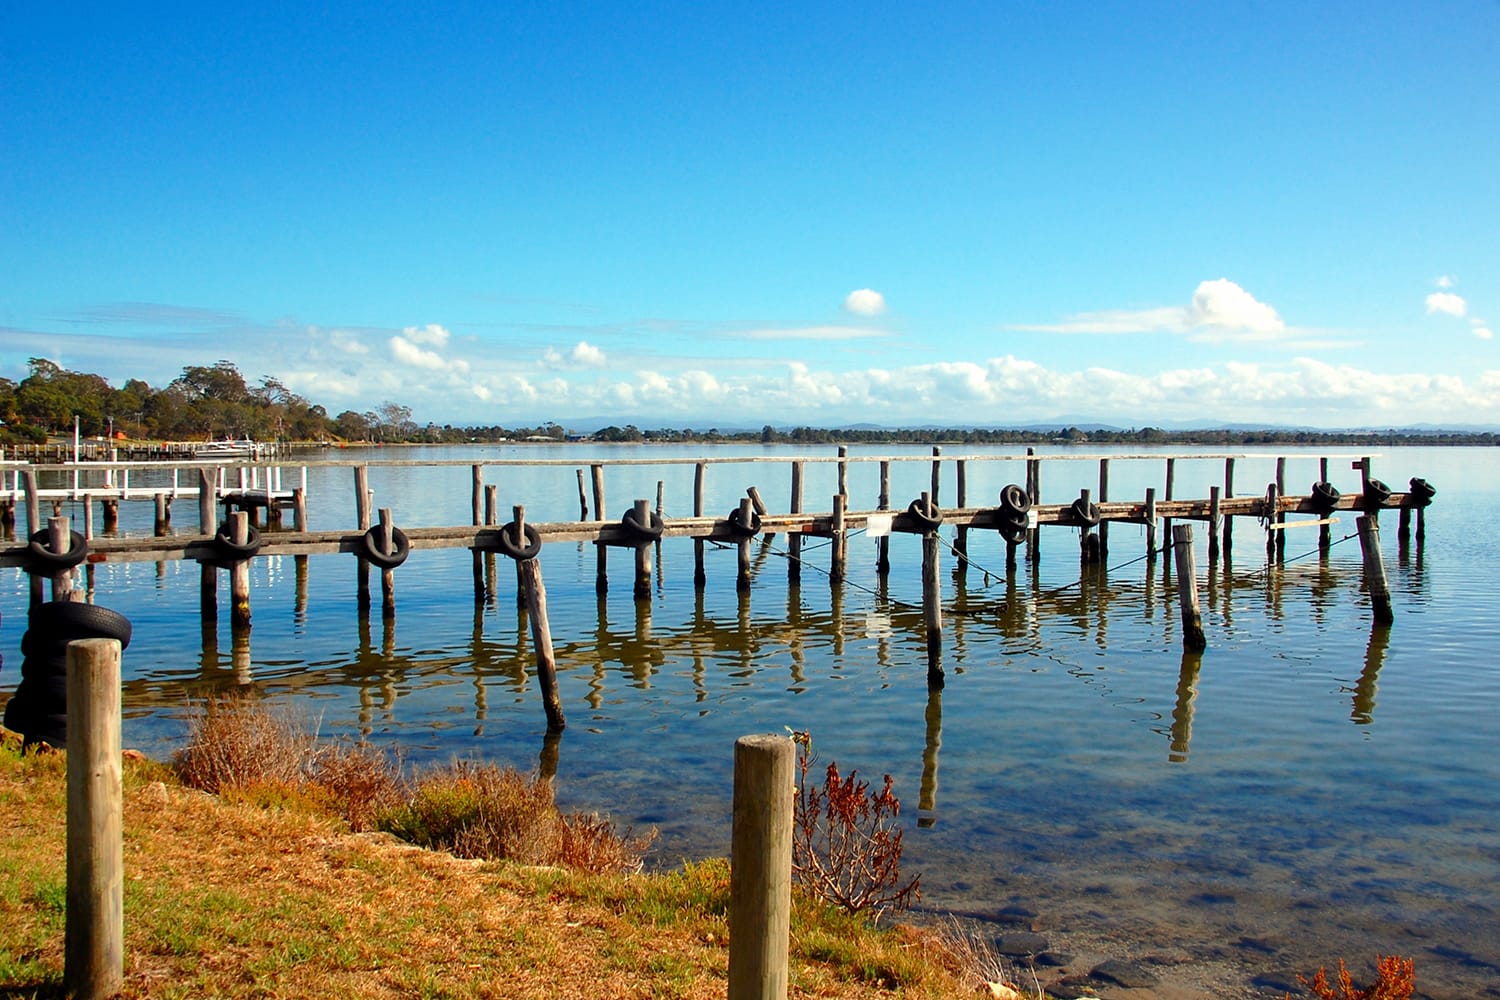 Αποβάθρα ψαρέματος, Eagle Point, μικρή πόλη στη Βικτώρια της Αυστραλίας, γνωστή από τη λίμνη King, το καταφύγιο και τη θαμνώδη περιοχή.